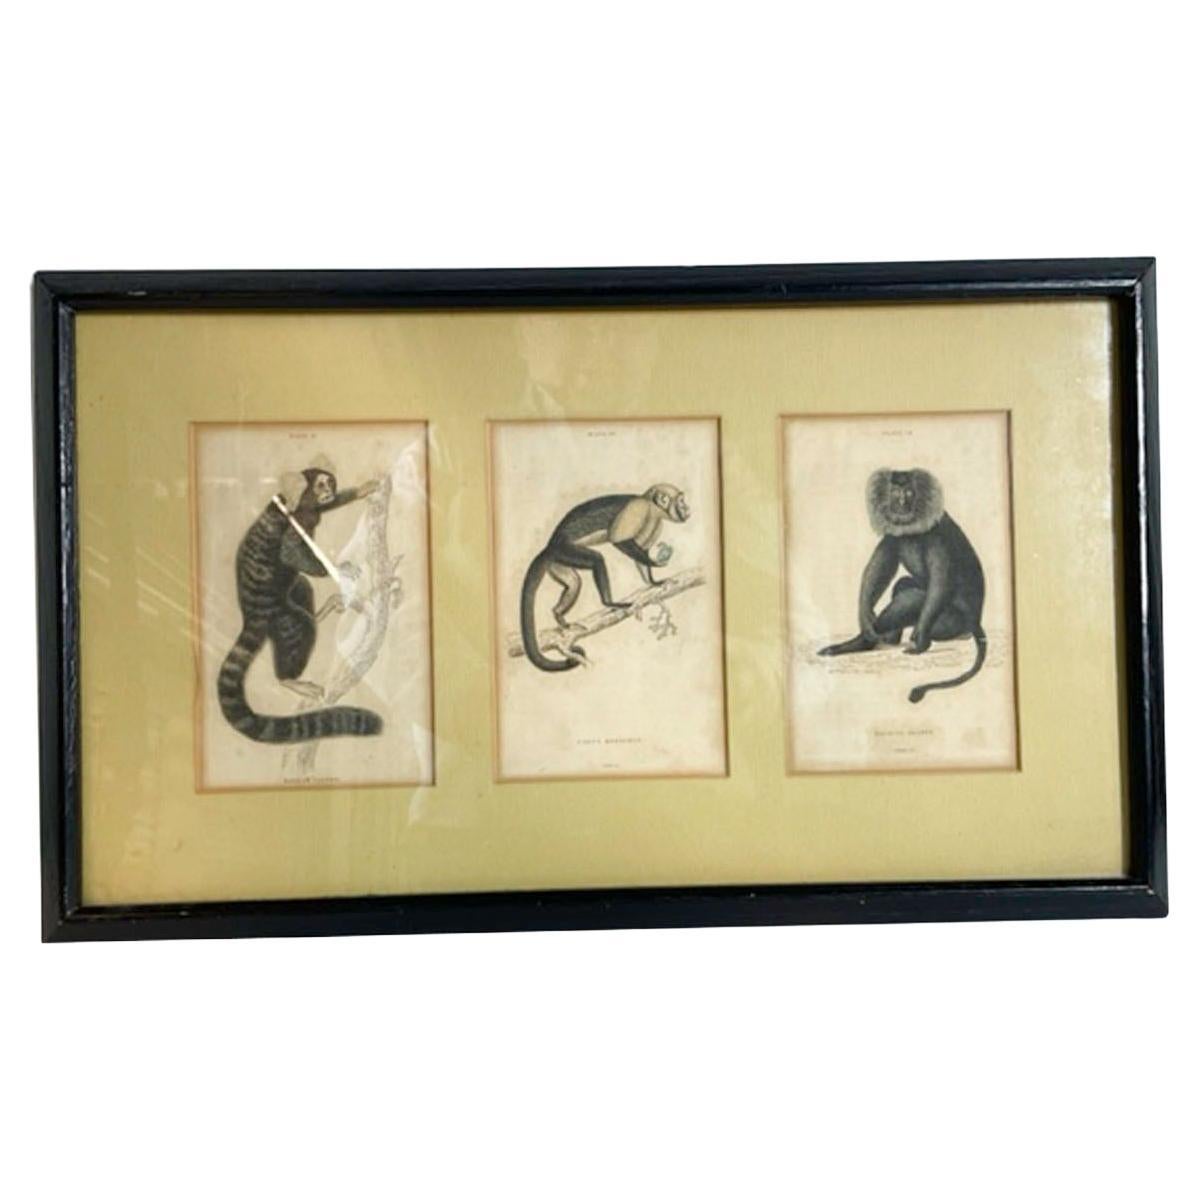 Trois gravures de singes colorées à la main du 18e/19e siècle, encadrées et superposées